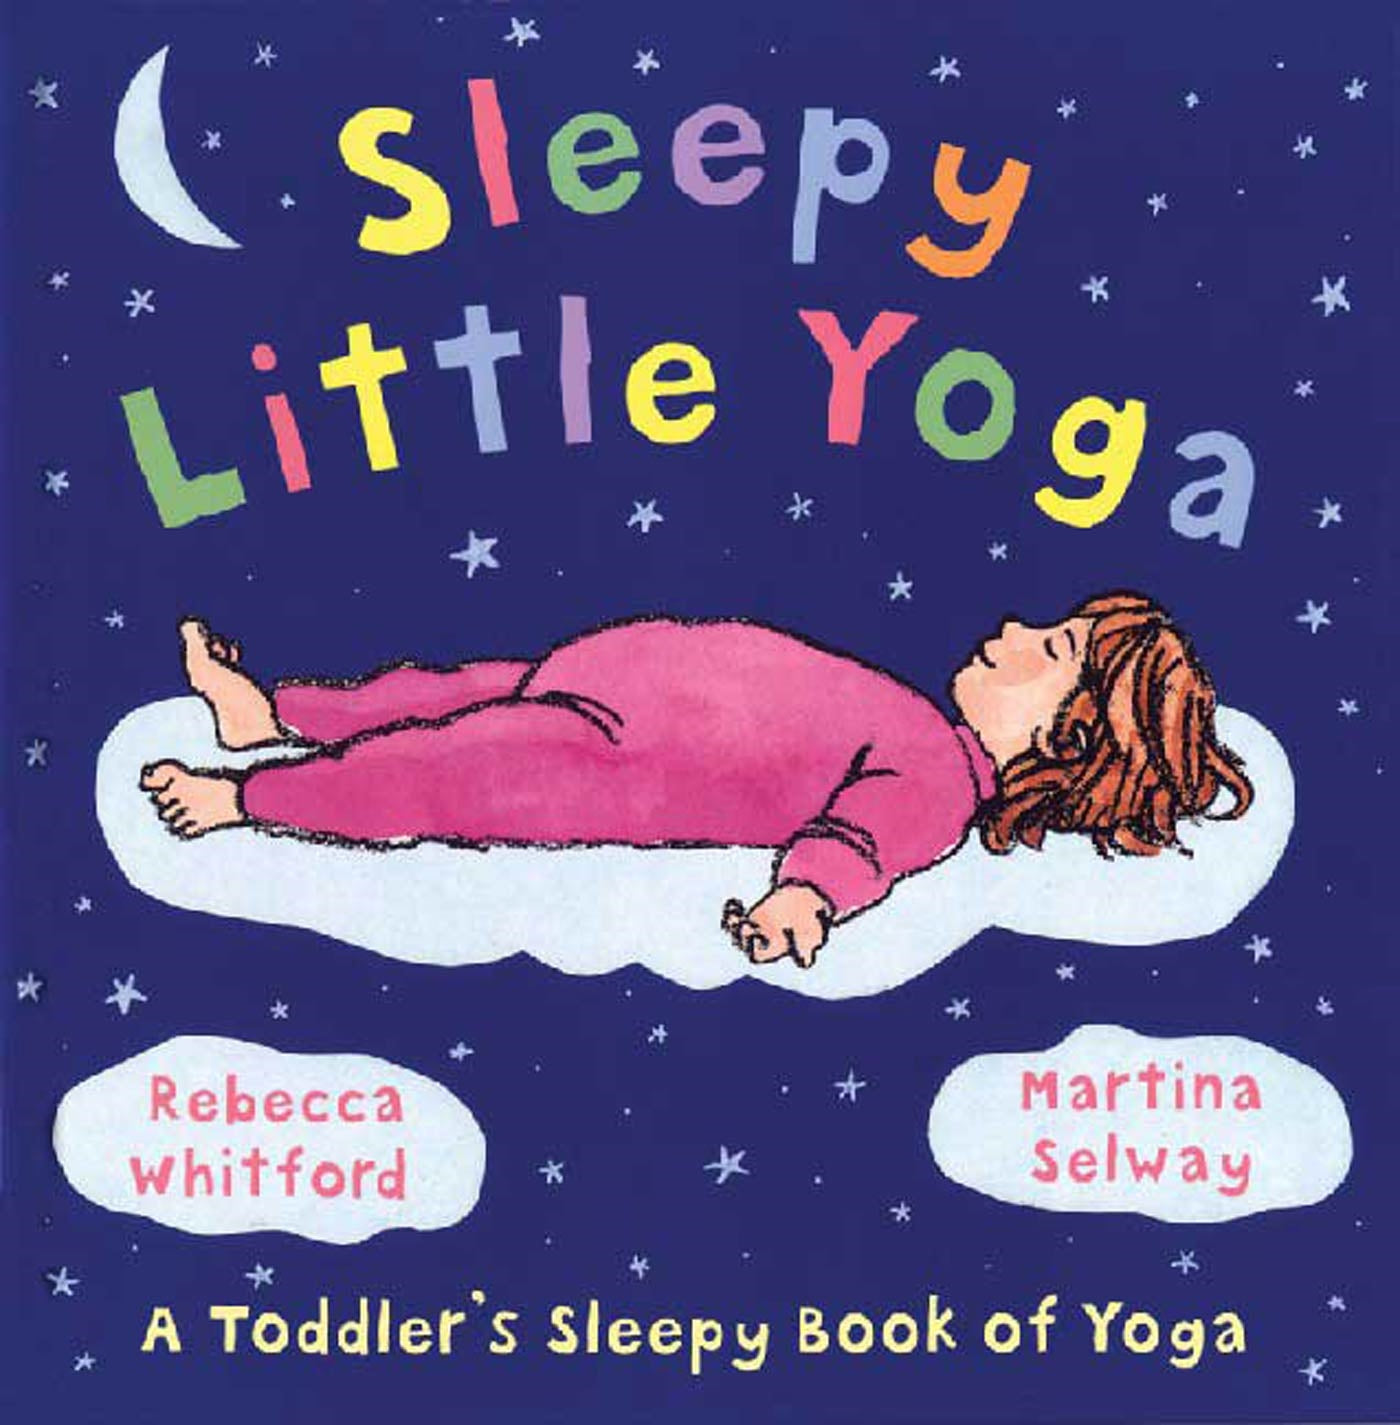 Sleepy Little Yoga by Rebecca Whitford